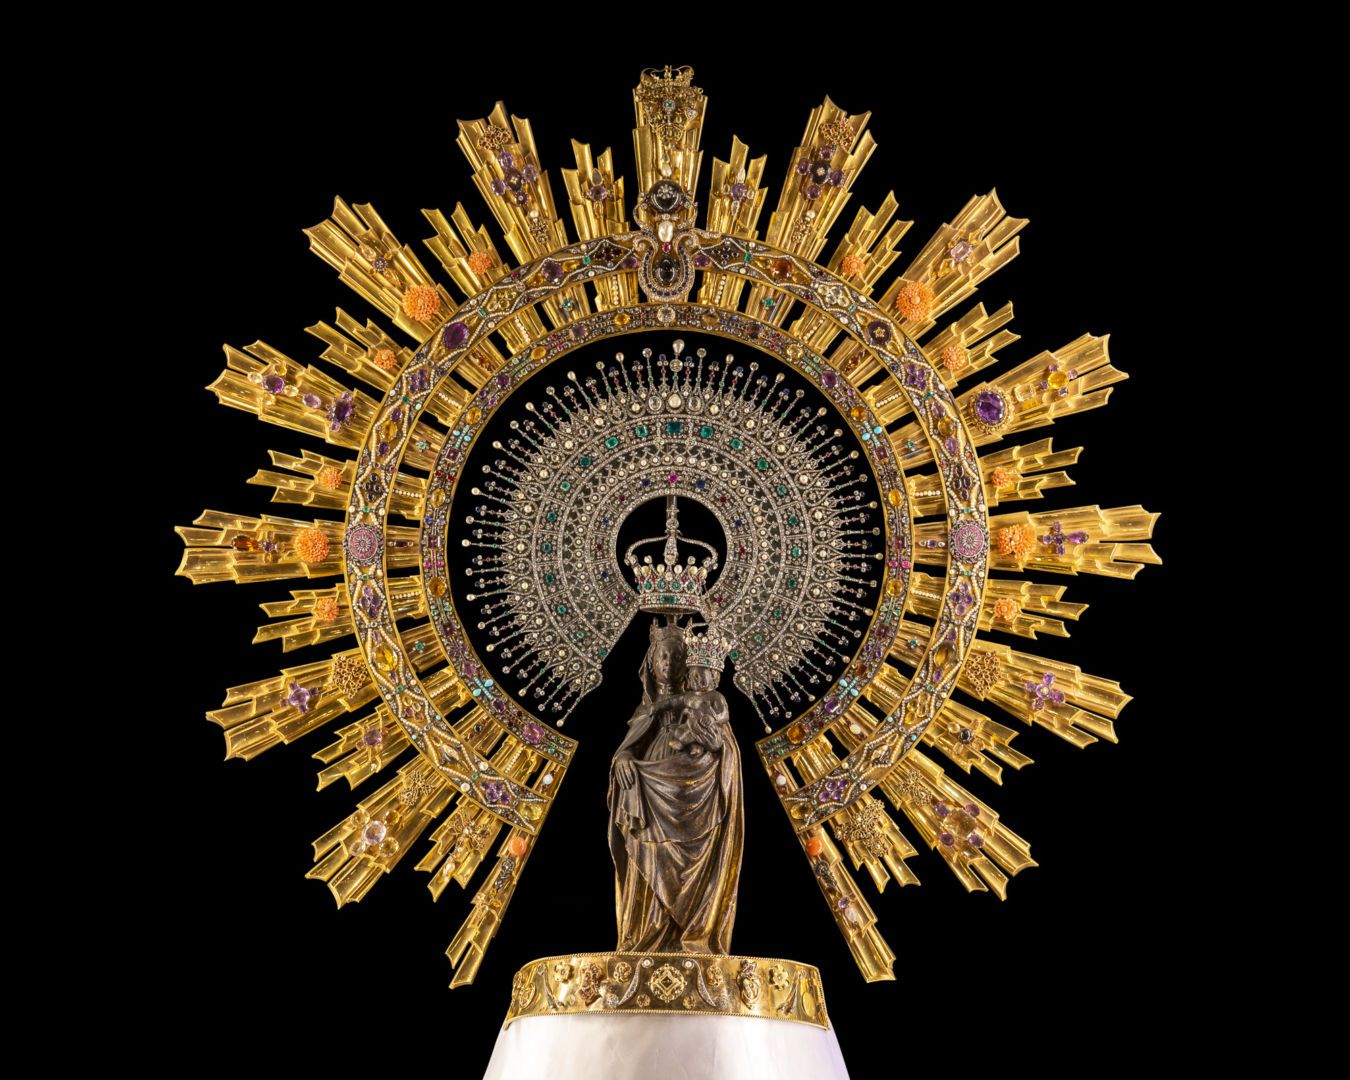 La Coronación de la Virgen del Pilar en 1905: Nuestra Señora del Pilar,  coronada